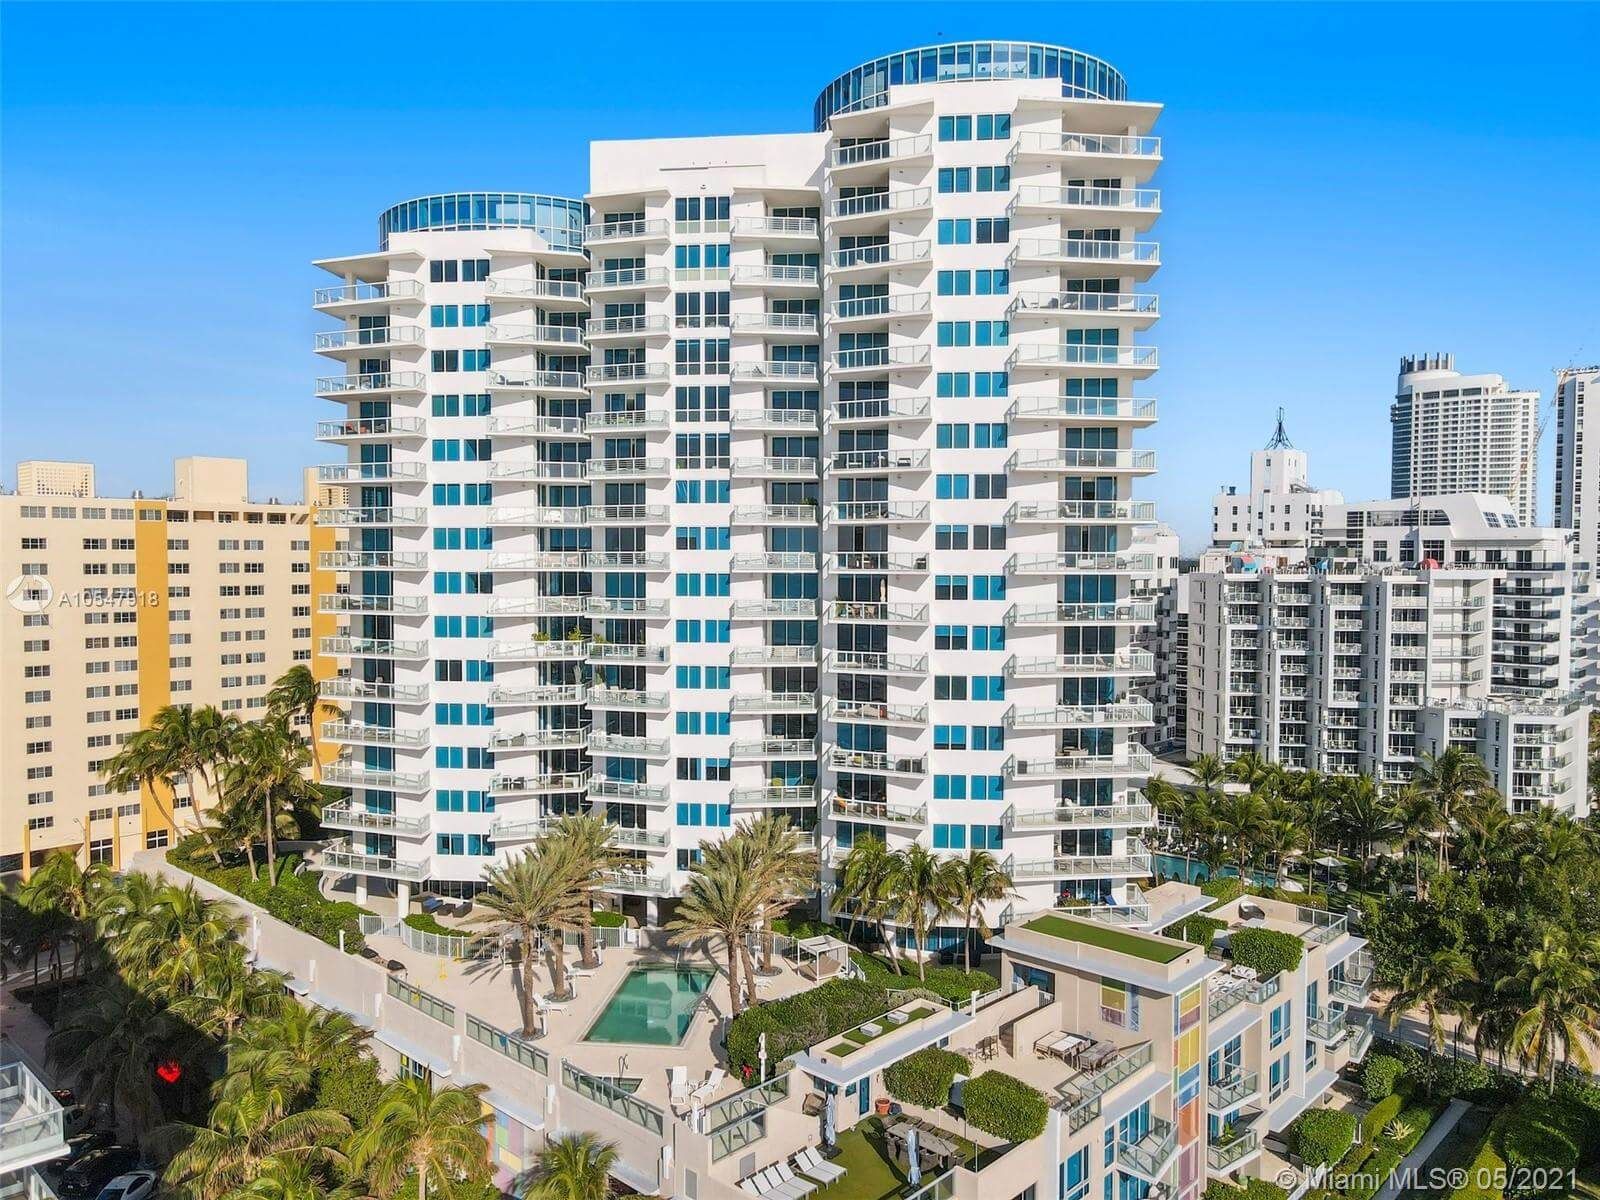 Vista del Edificio en Mosaico de Miami Beach